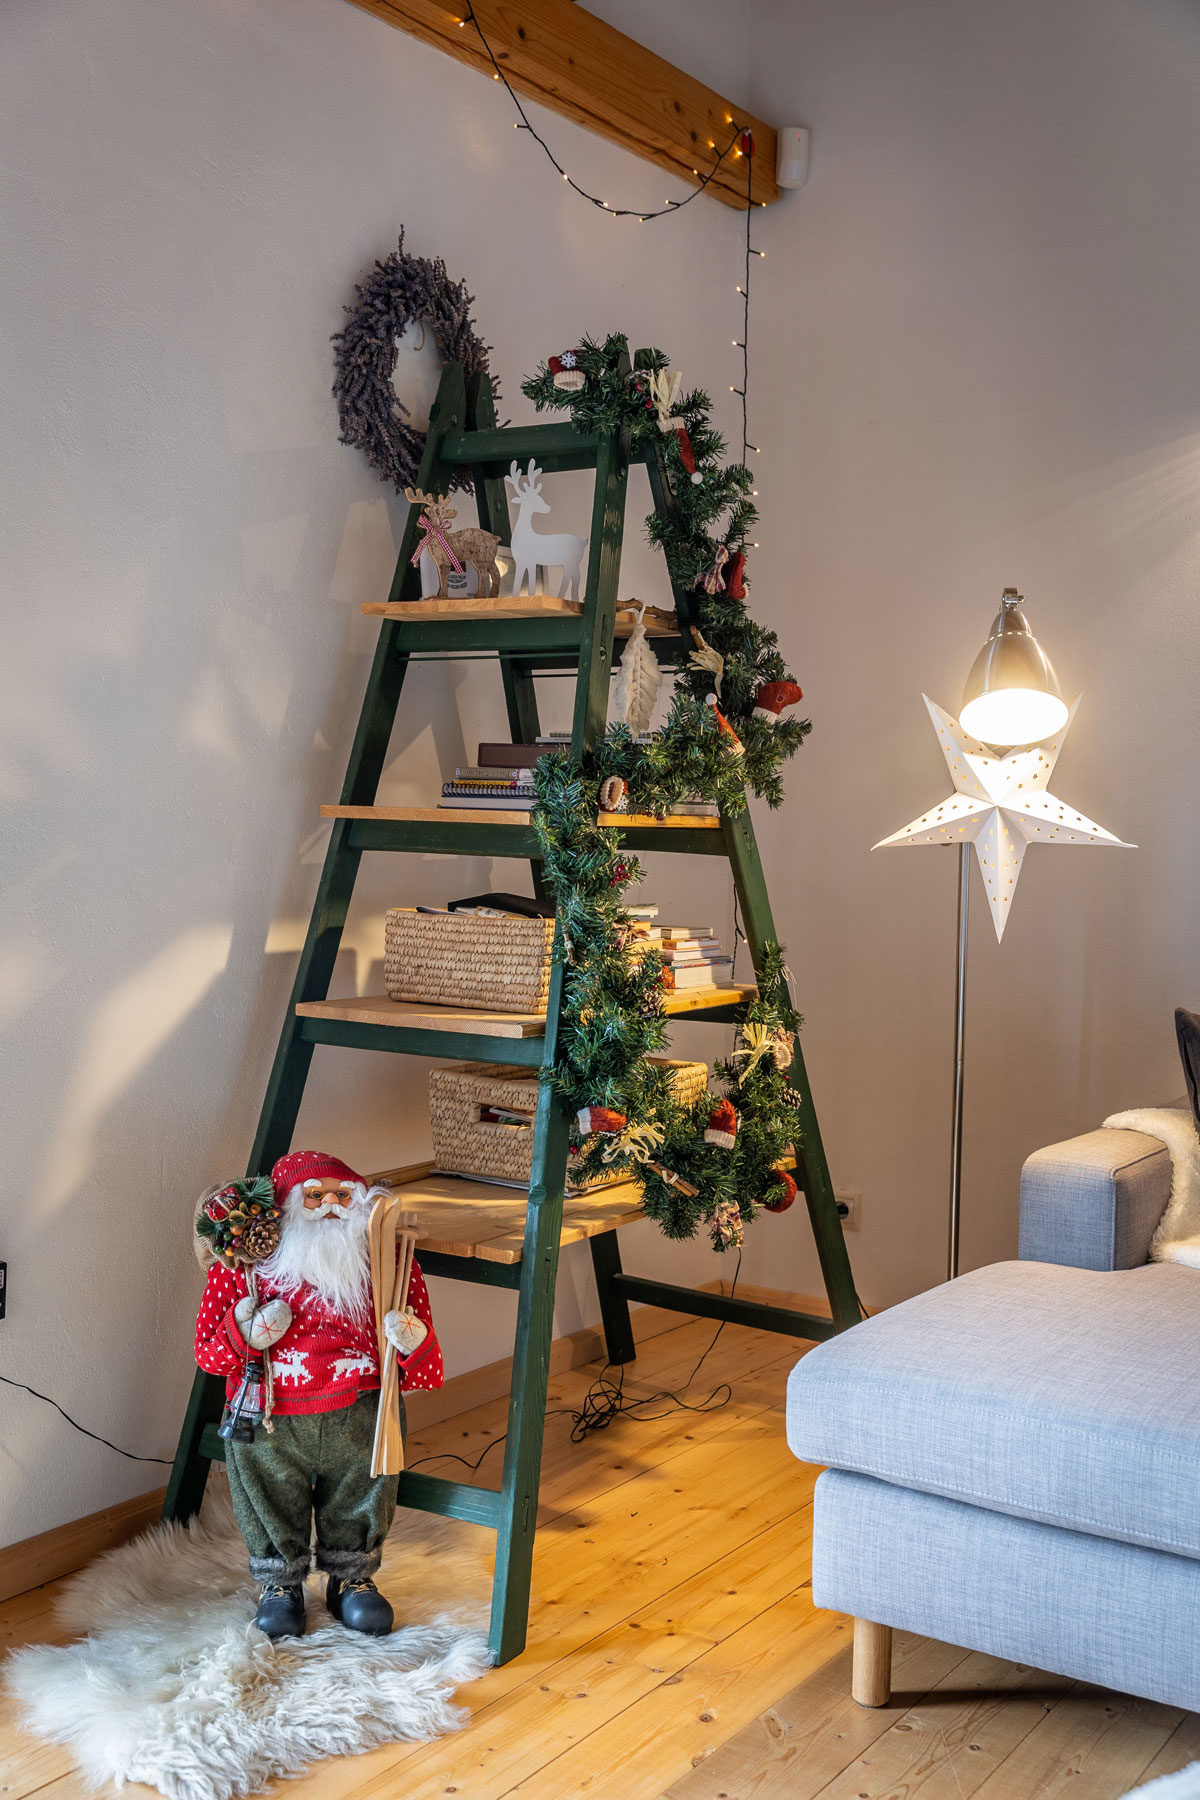 zelený rebrík v obývačke premenení na policu s vianočnou girlandou